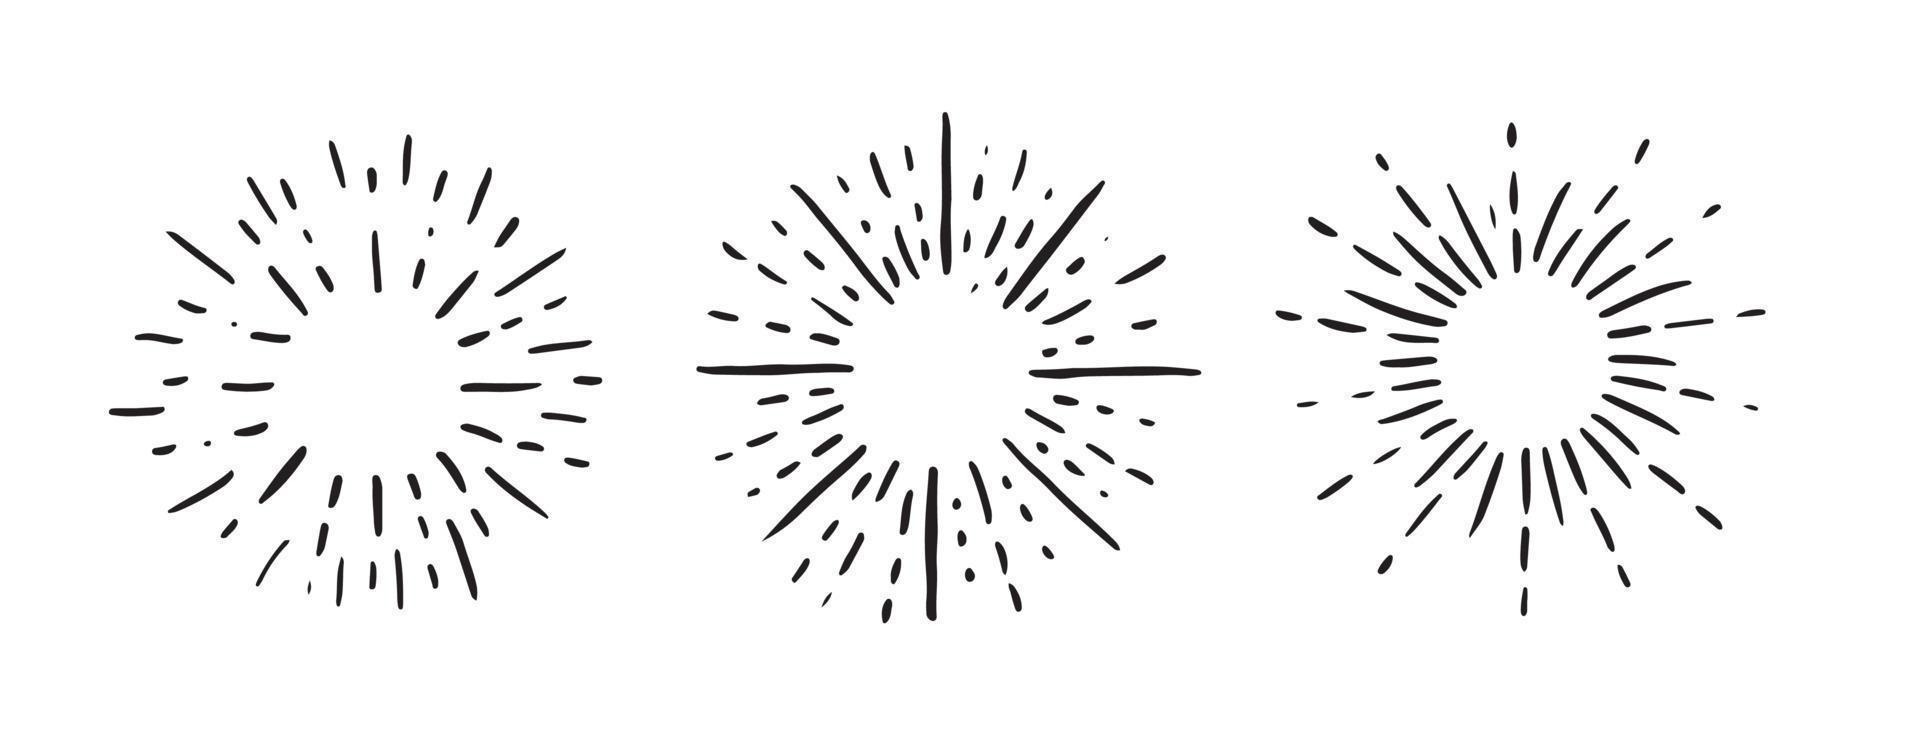 imágenes de rayos solares sobre fondo negro. conjunto de iconos dibujados a mano de fuegos artificiales. vector. vector